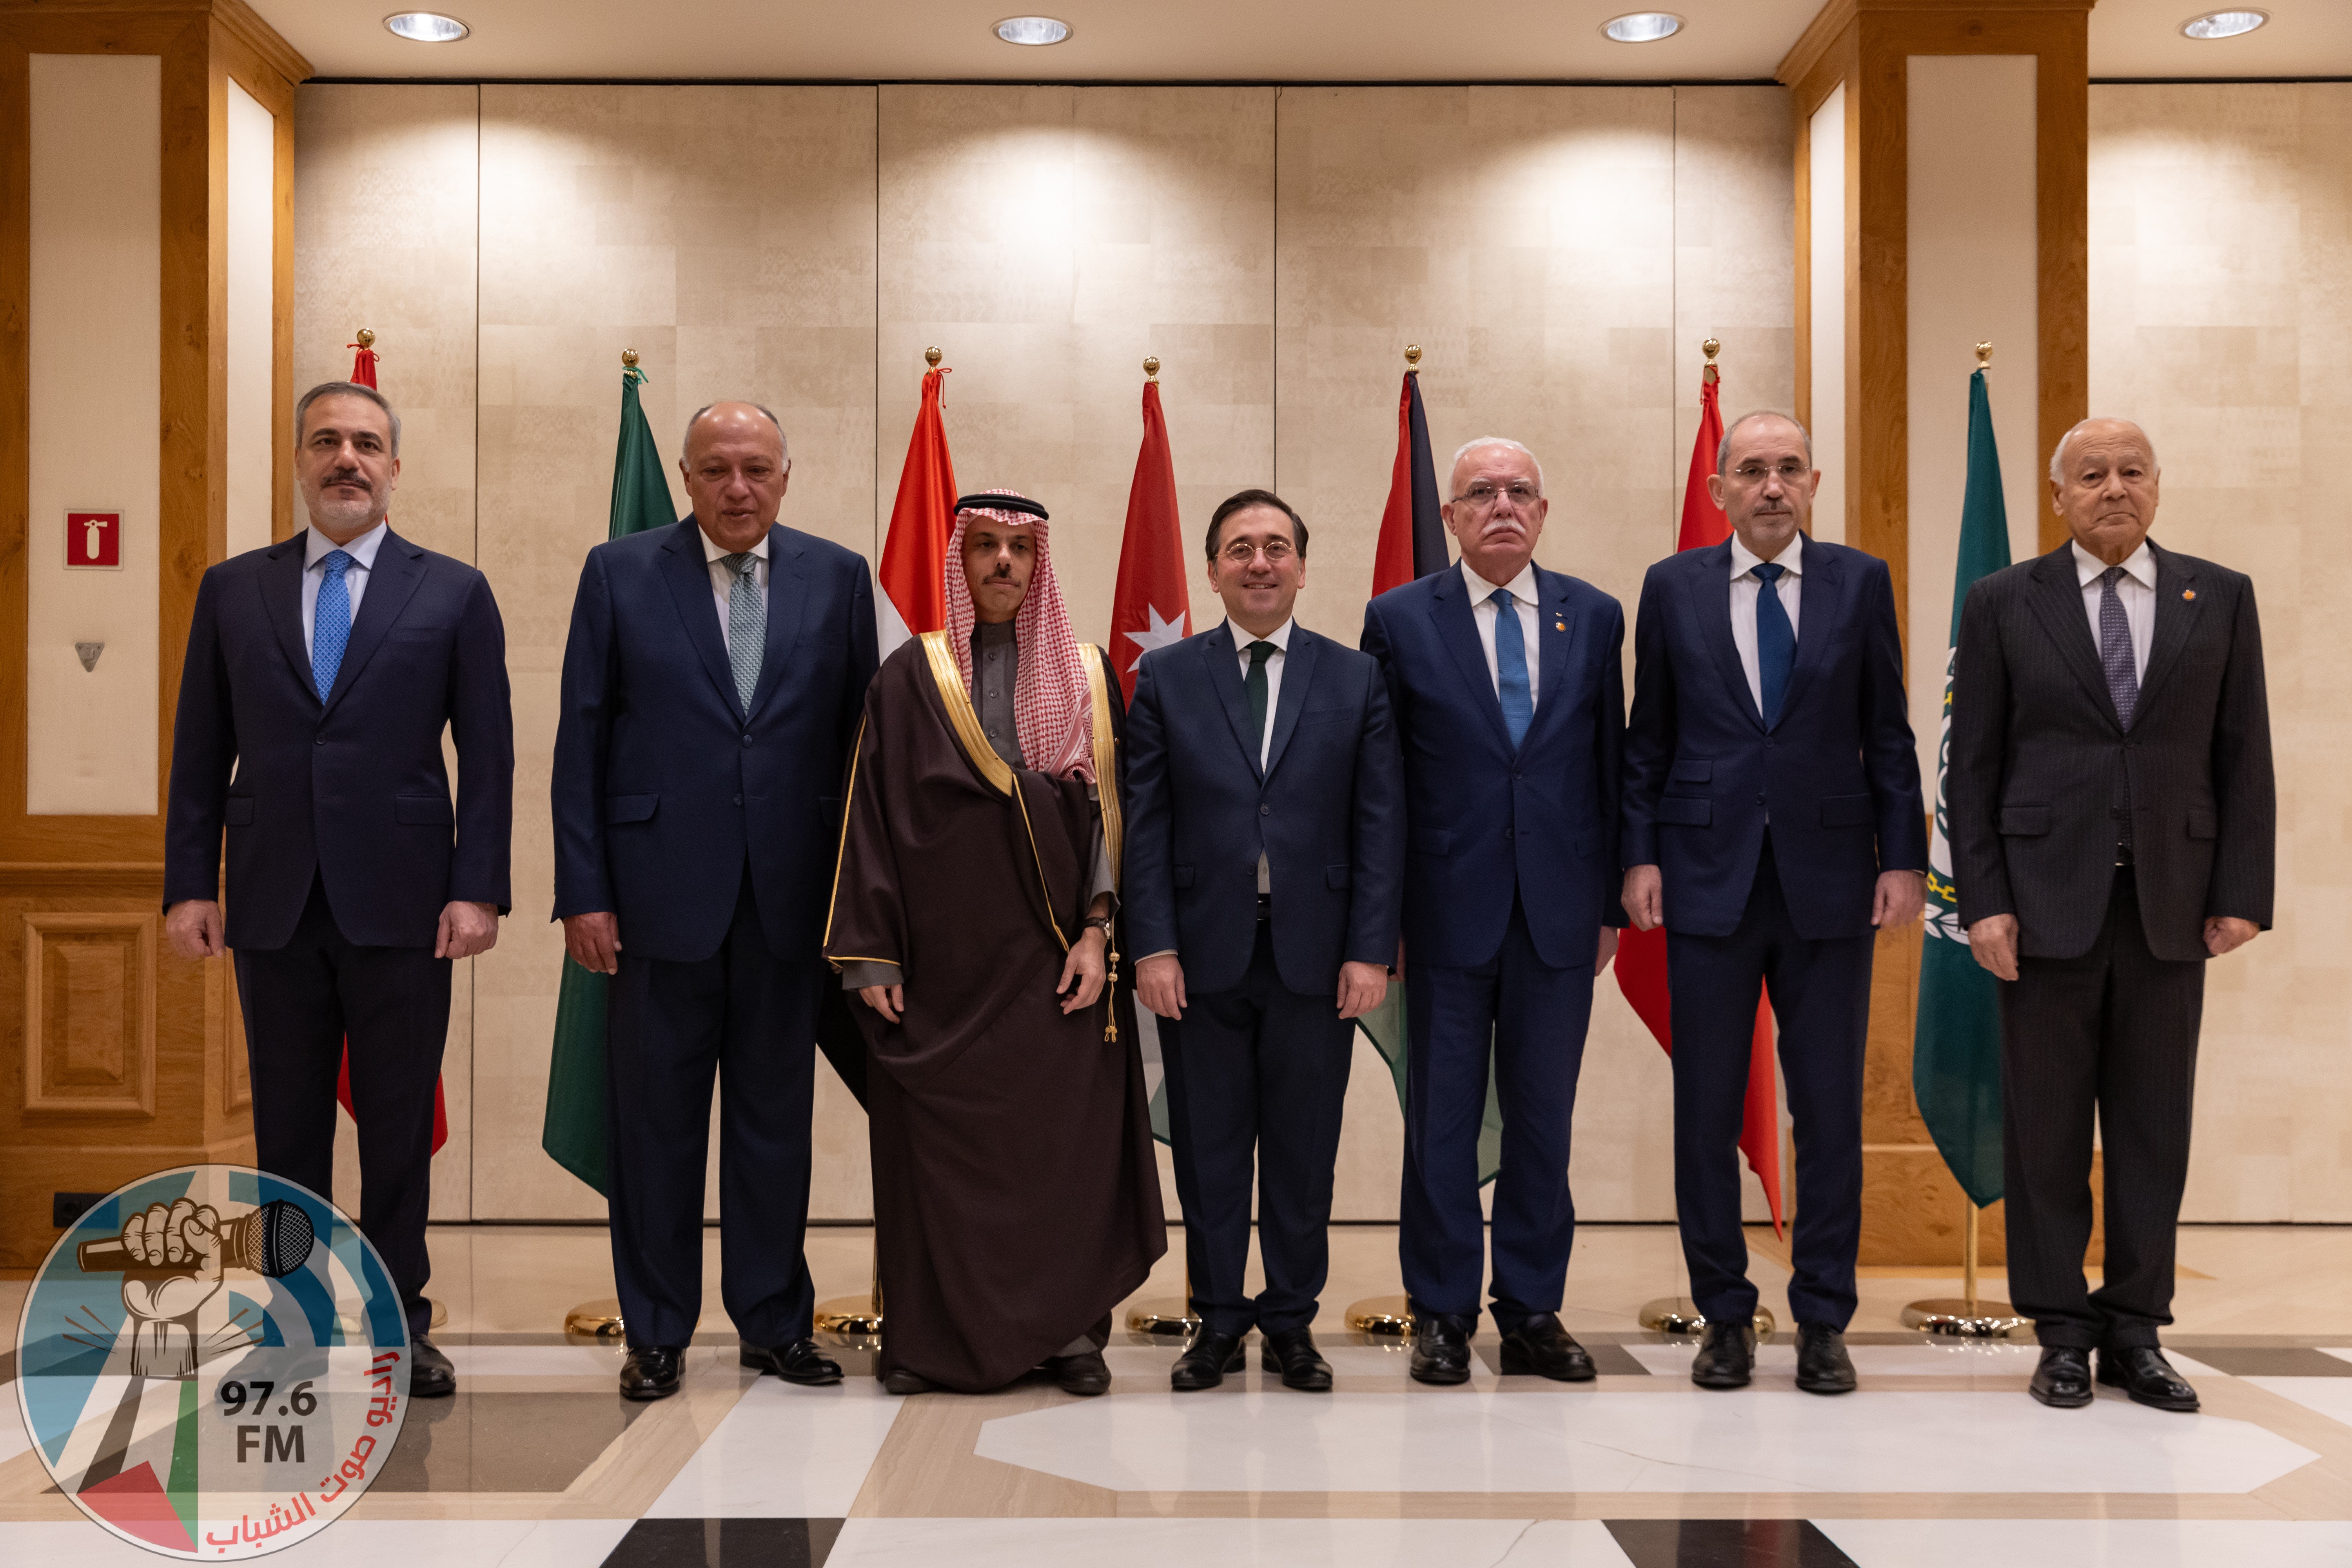 اللجنة الوزارية المكلفة من القمة العربية الإسلامية تلتقي وزير خارجية إسبانيا